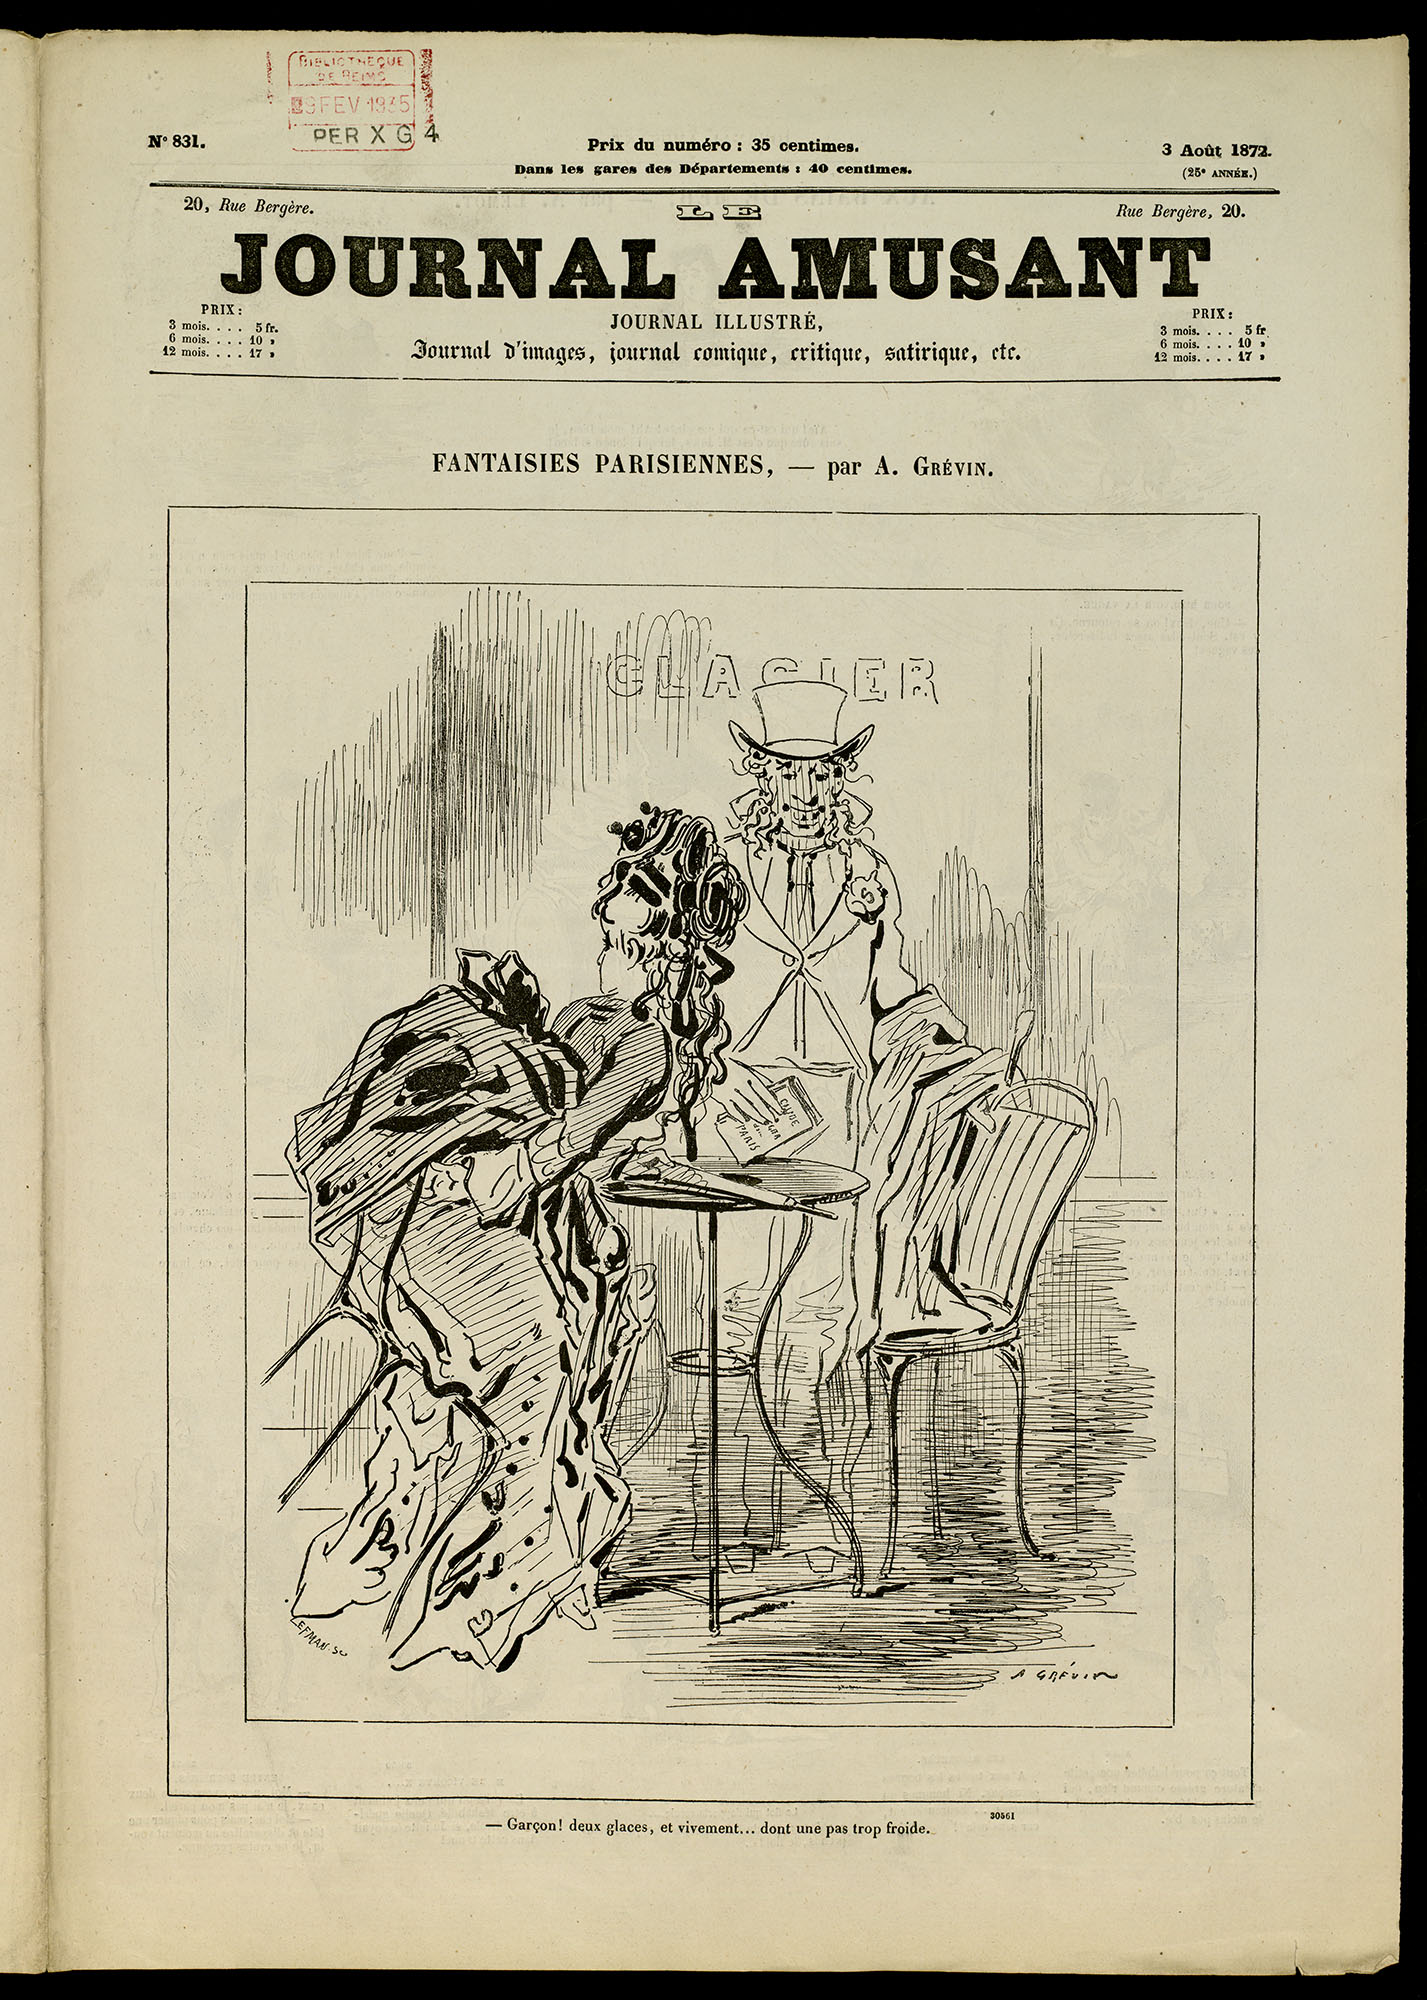 Le Journal Amusant, Une du 3 août 1872. BM Reims, PER_X_G_004